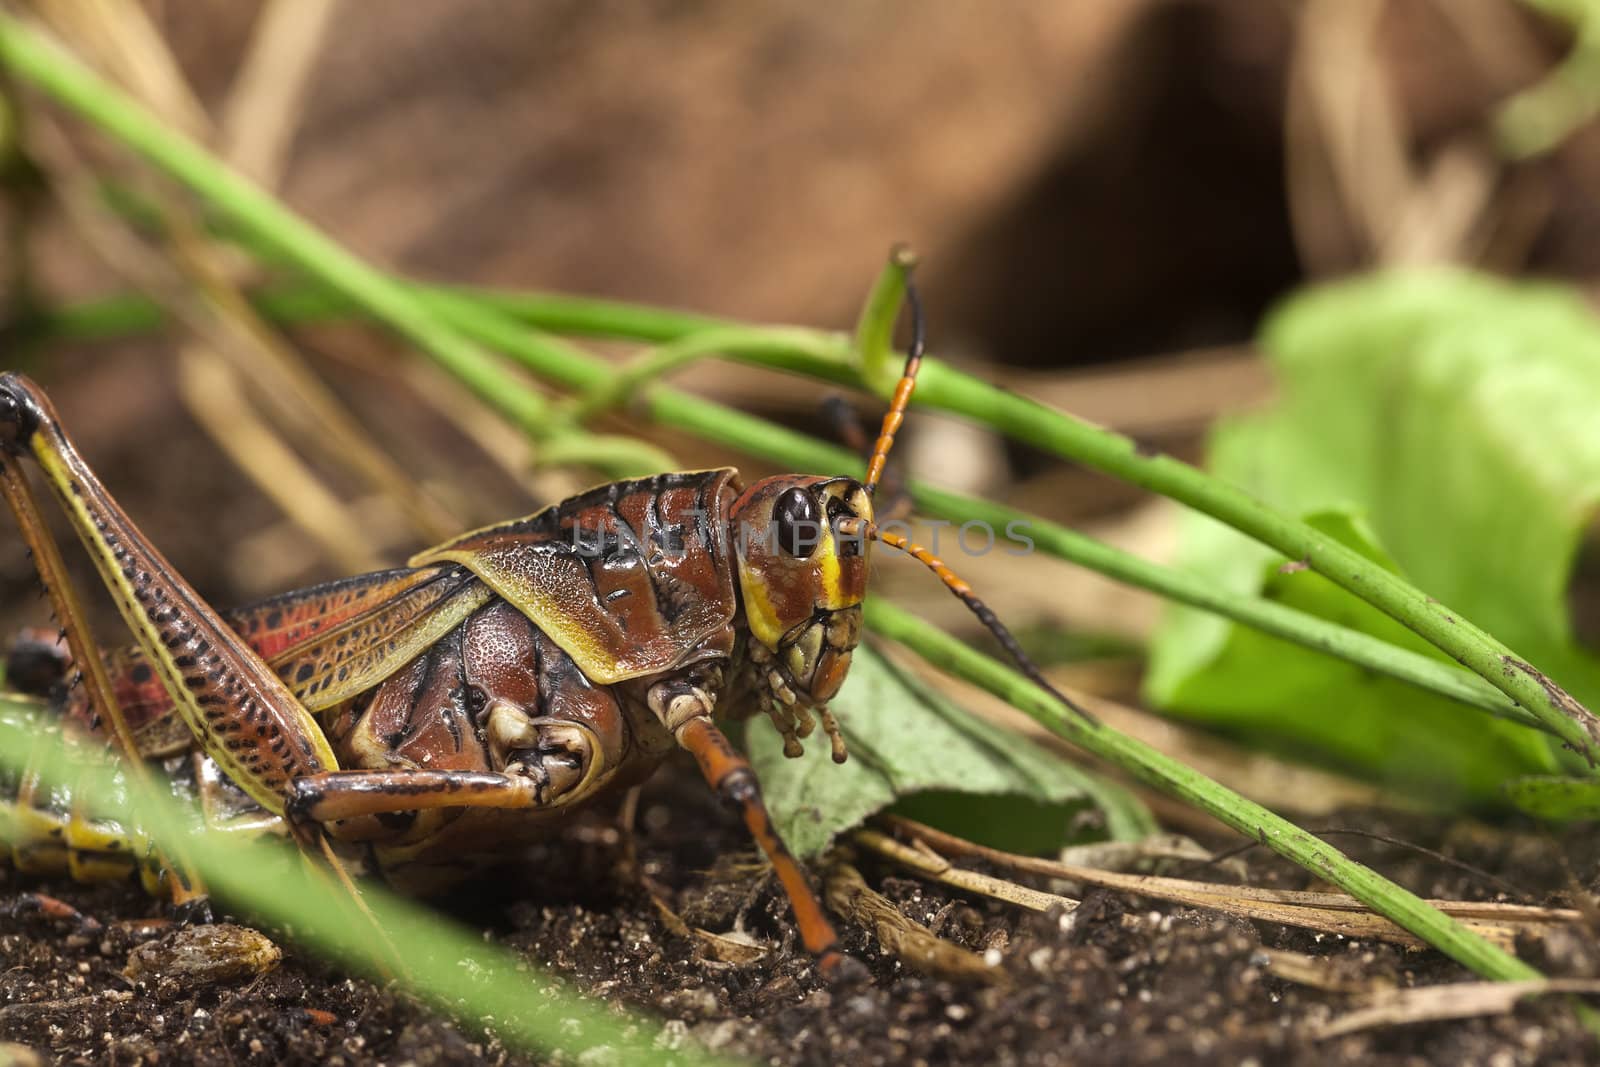 A close up shot of a grasshopper.